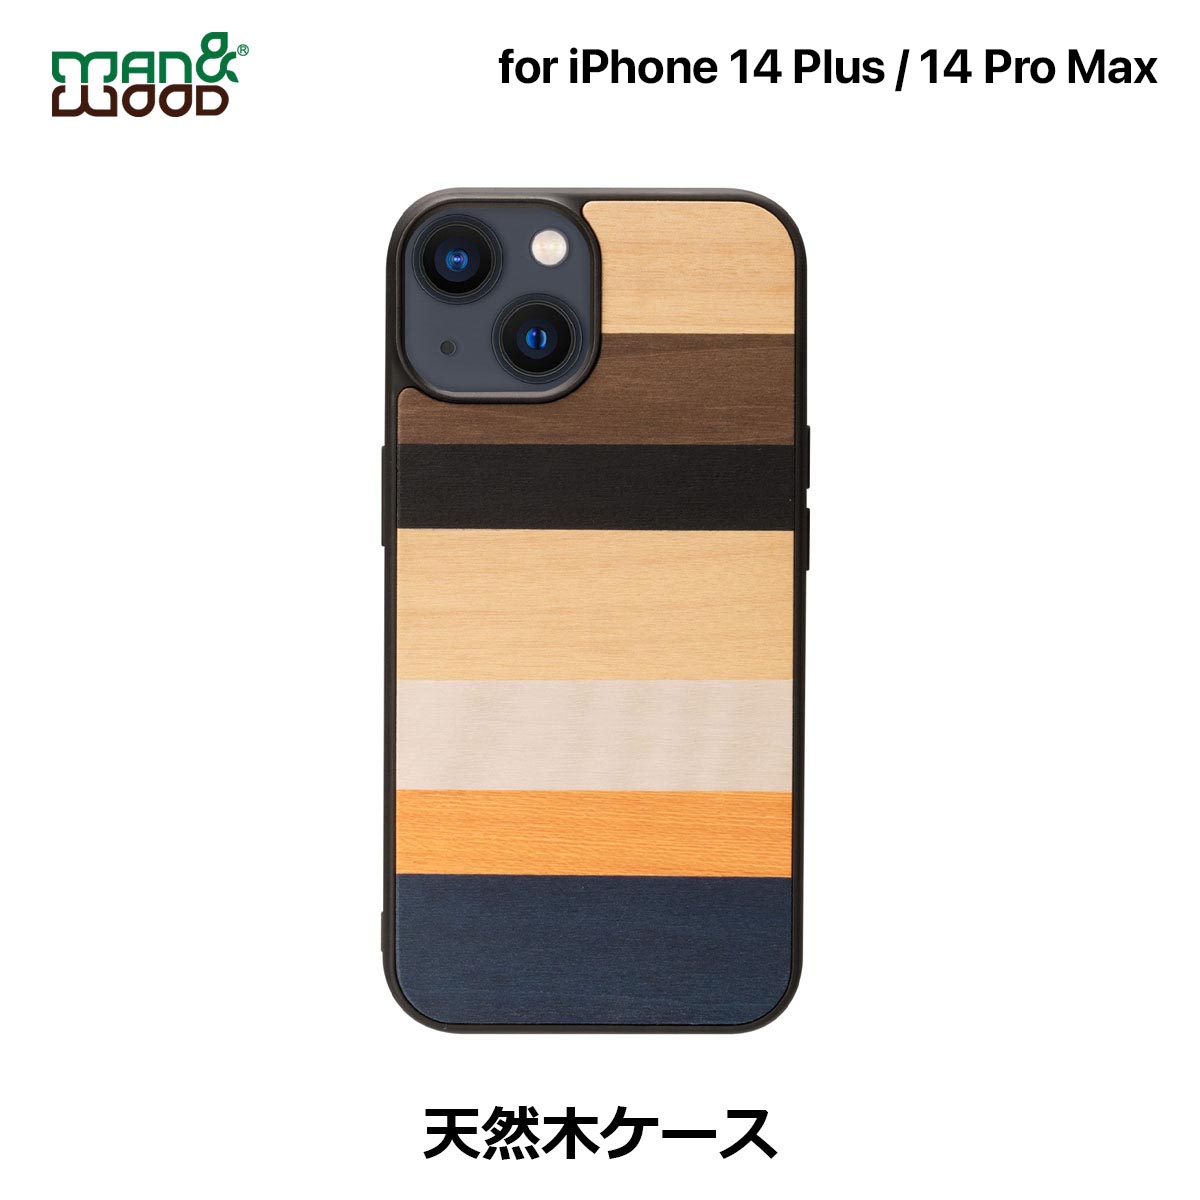 iPhone14Plus 14ProMax P[X Jo[ ؐ VR Man&Wood Province | iPhone14ProMax ACtH14 Pro Max ؖ Ebh i` wʃJo[ TPU nCubh  l  X Xgbvz[t CX[dΉ